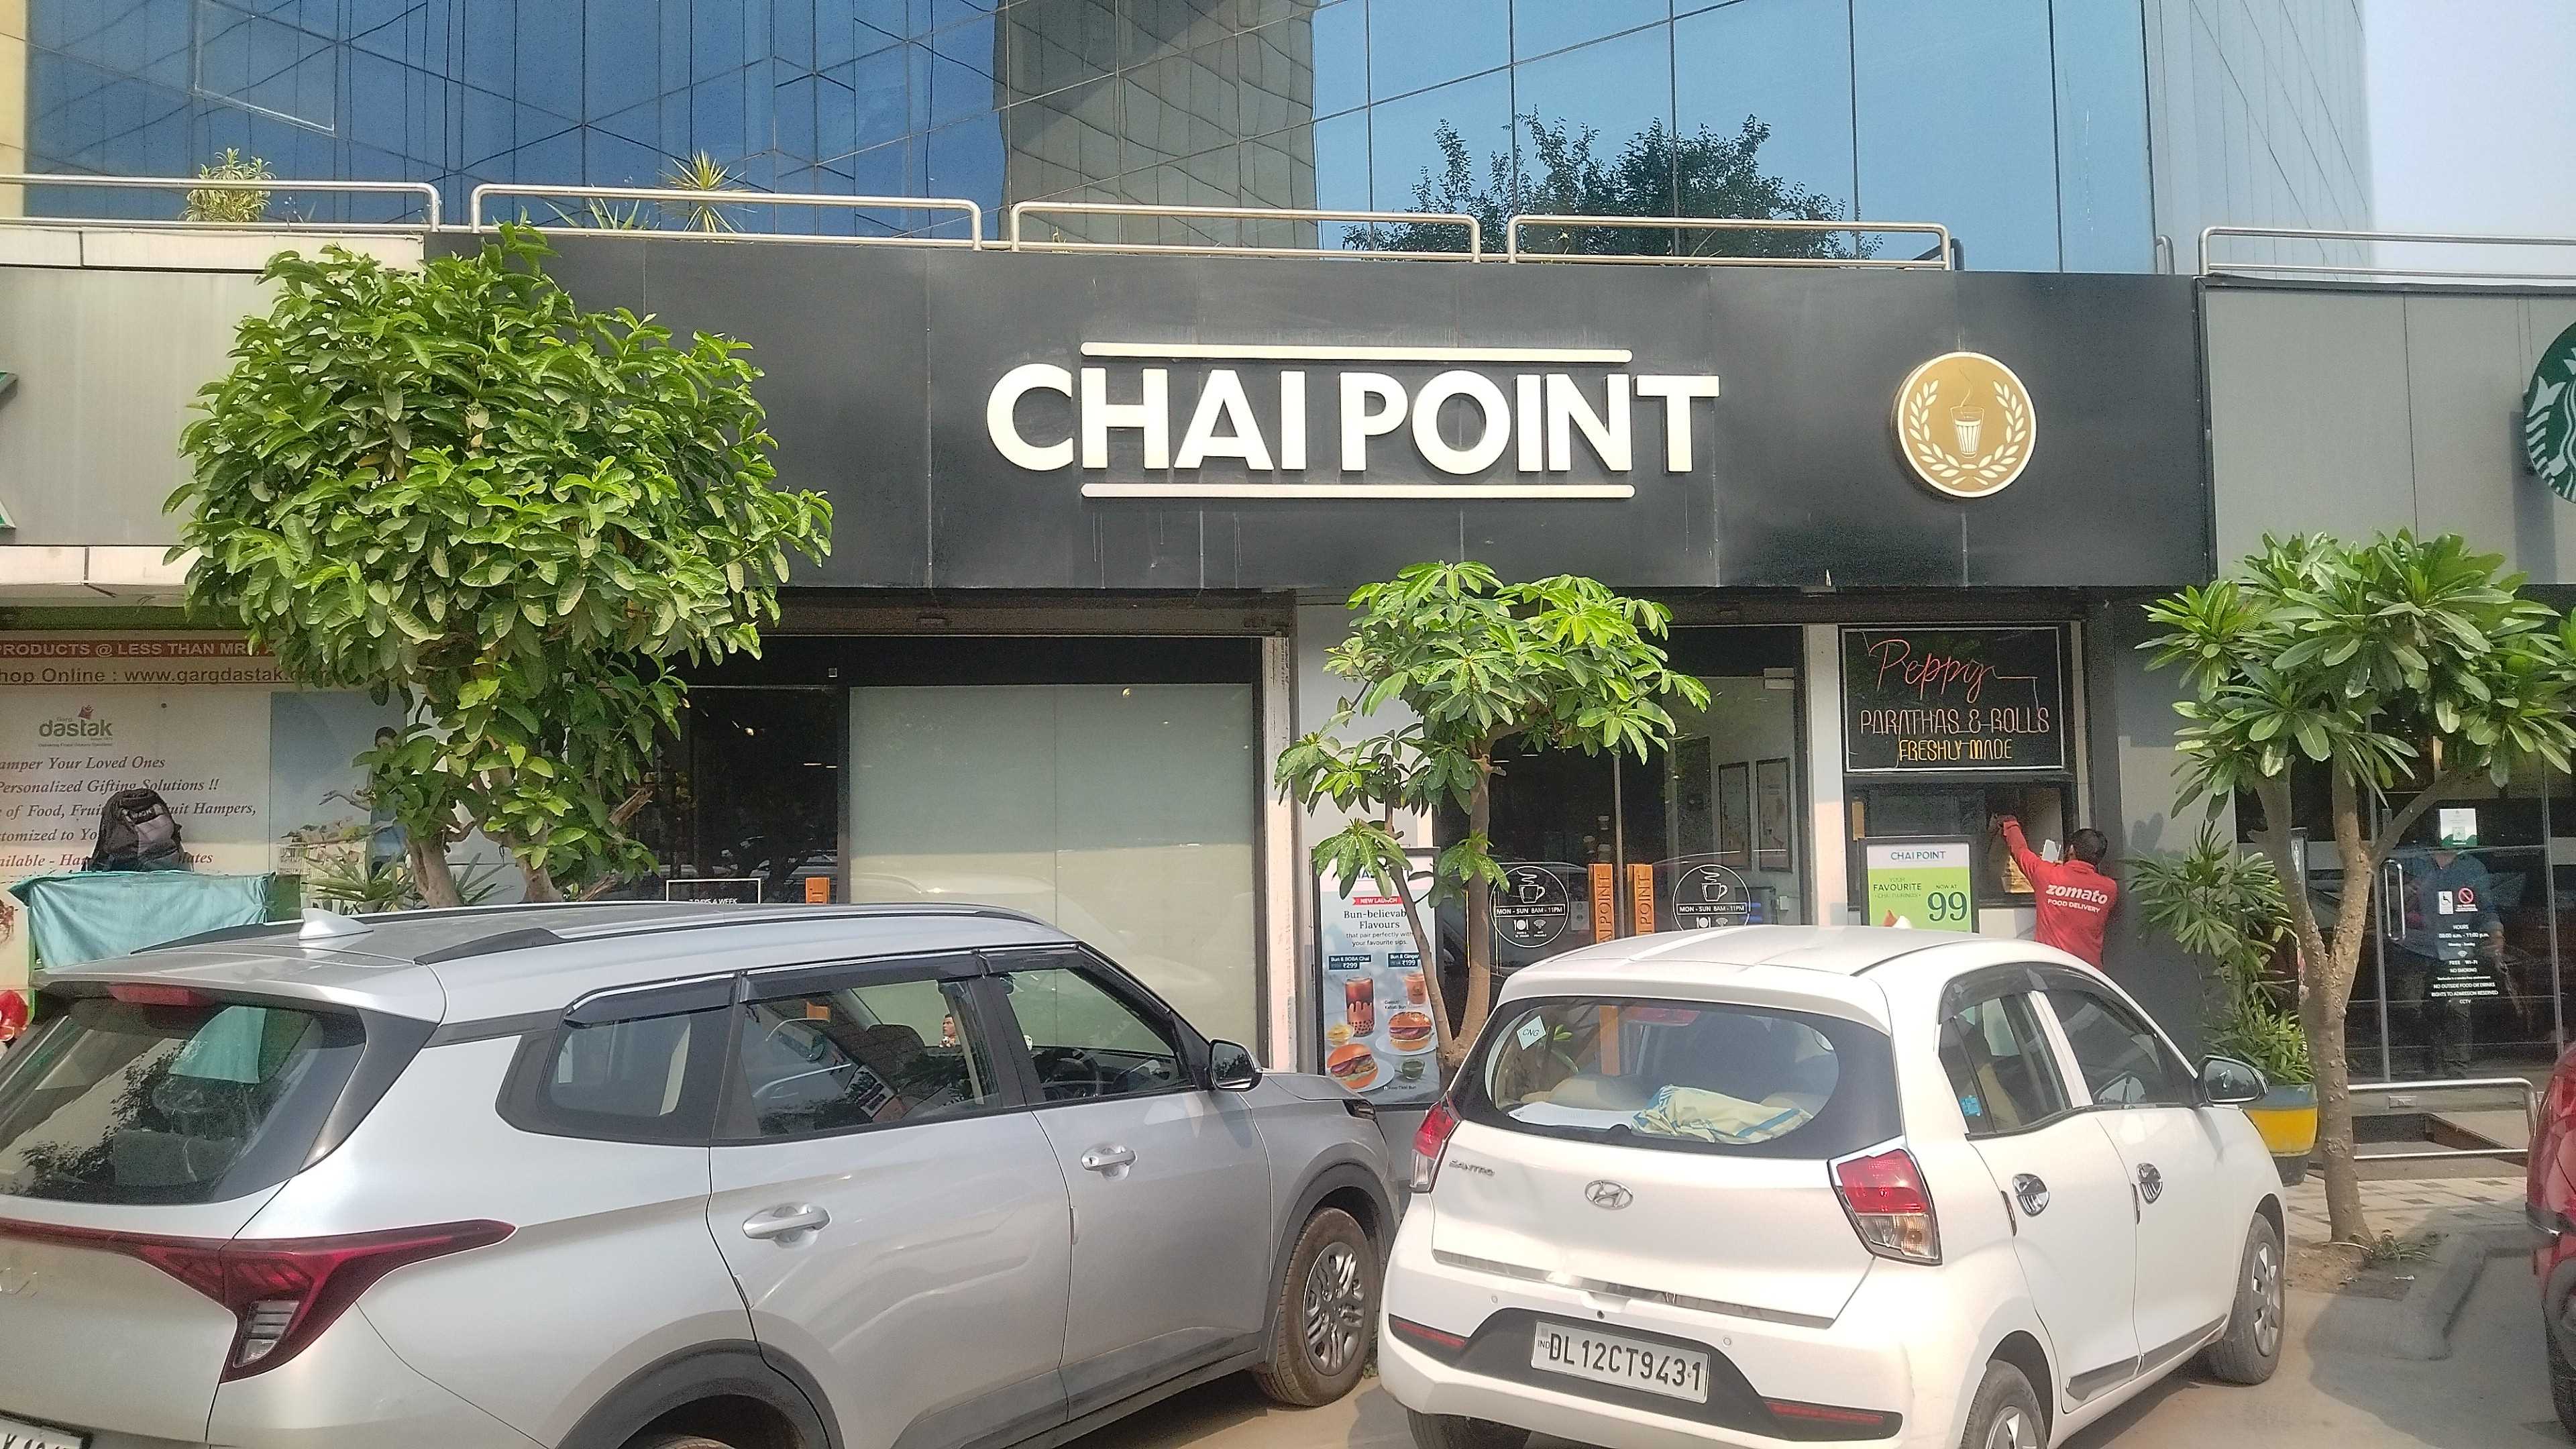 Chai Point - Sector 54, Gurgaon Cafe - Sector 53, Gurgaon